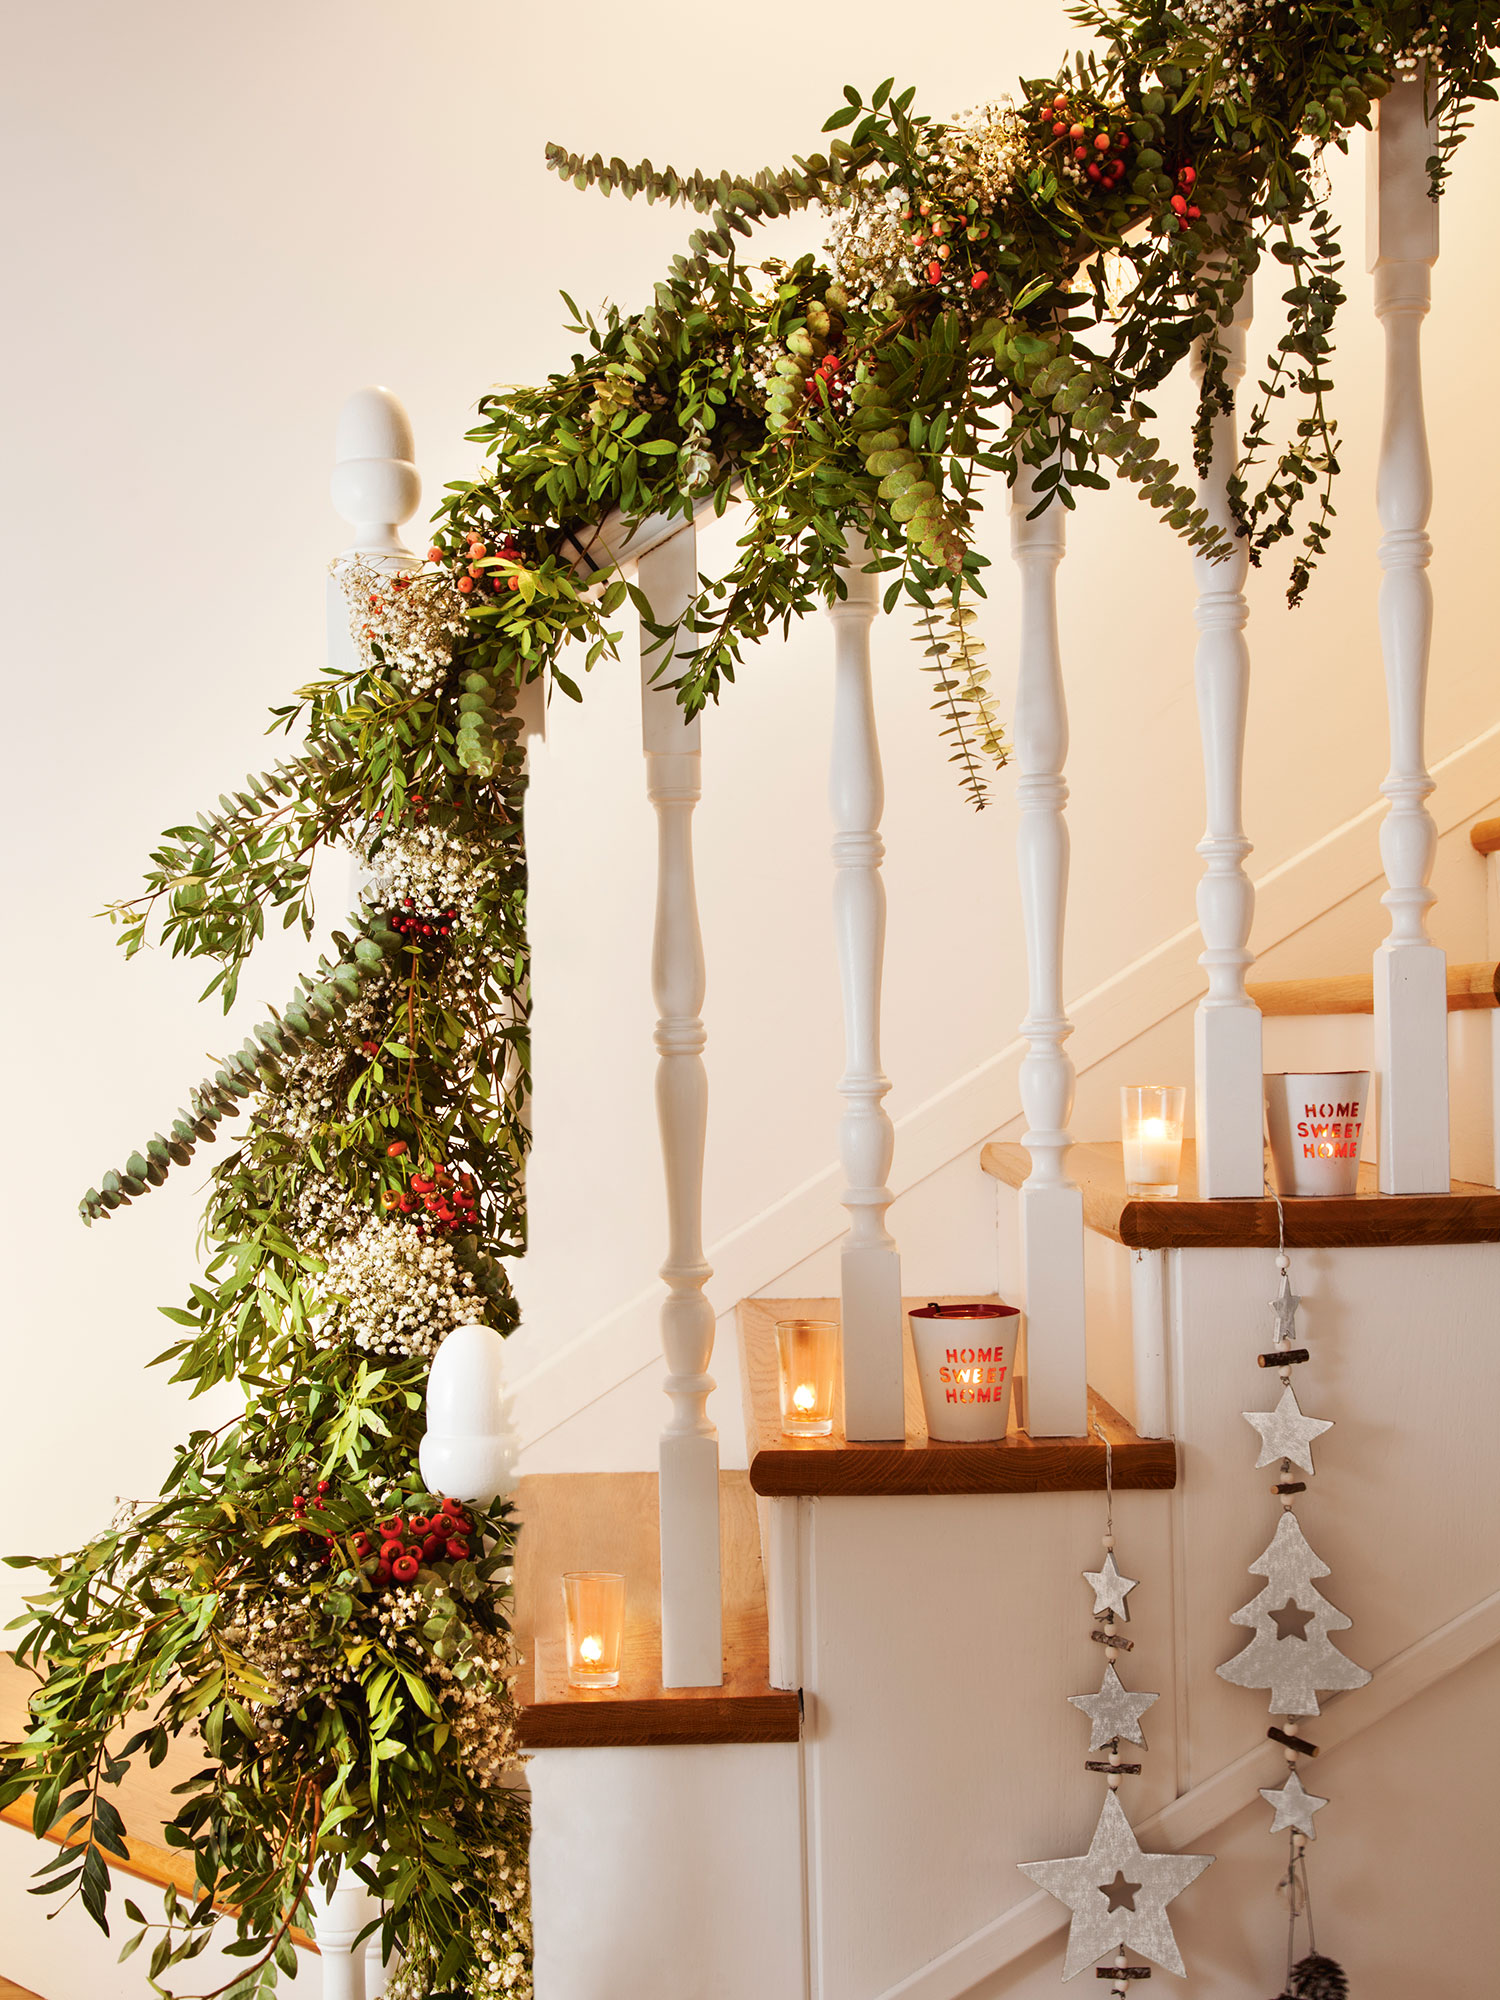 Detalle de escalera con peldaños de madera y barrotes blancos decorada de Navidad con ramas verdes, adornos y velas